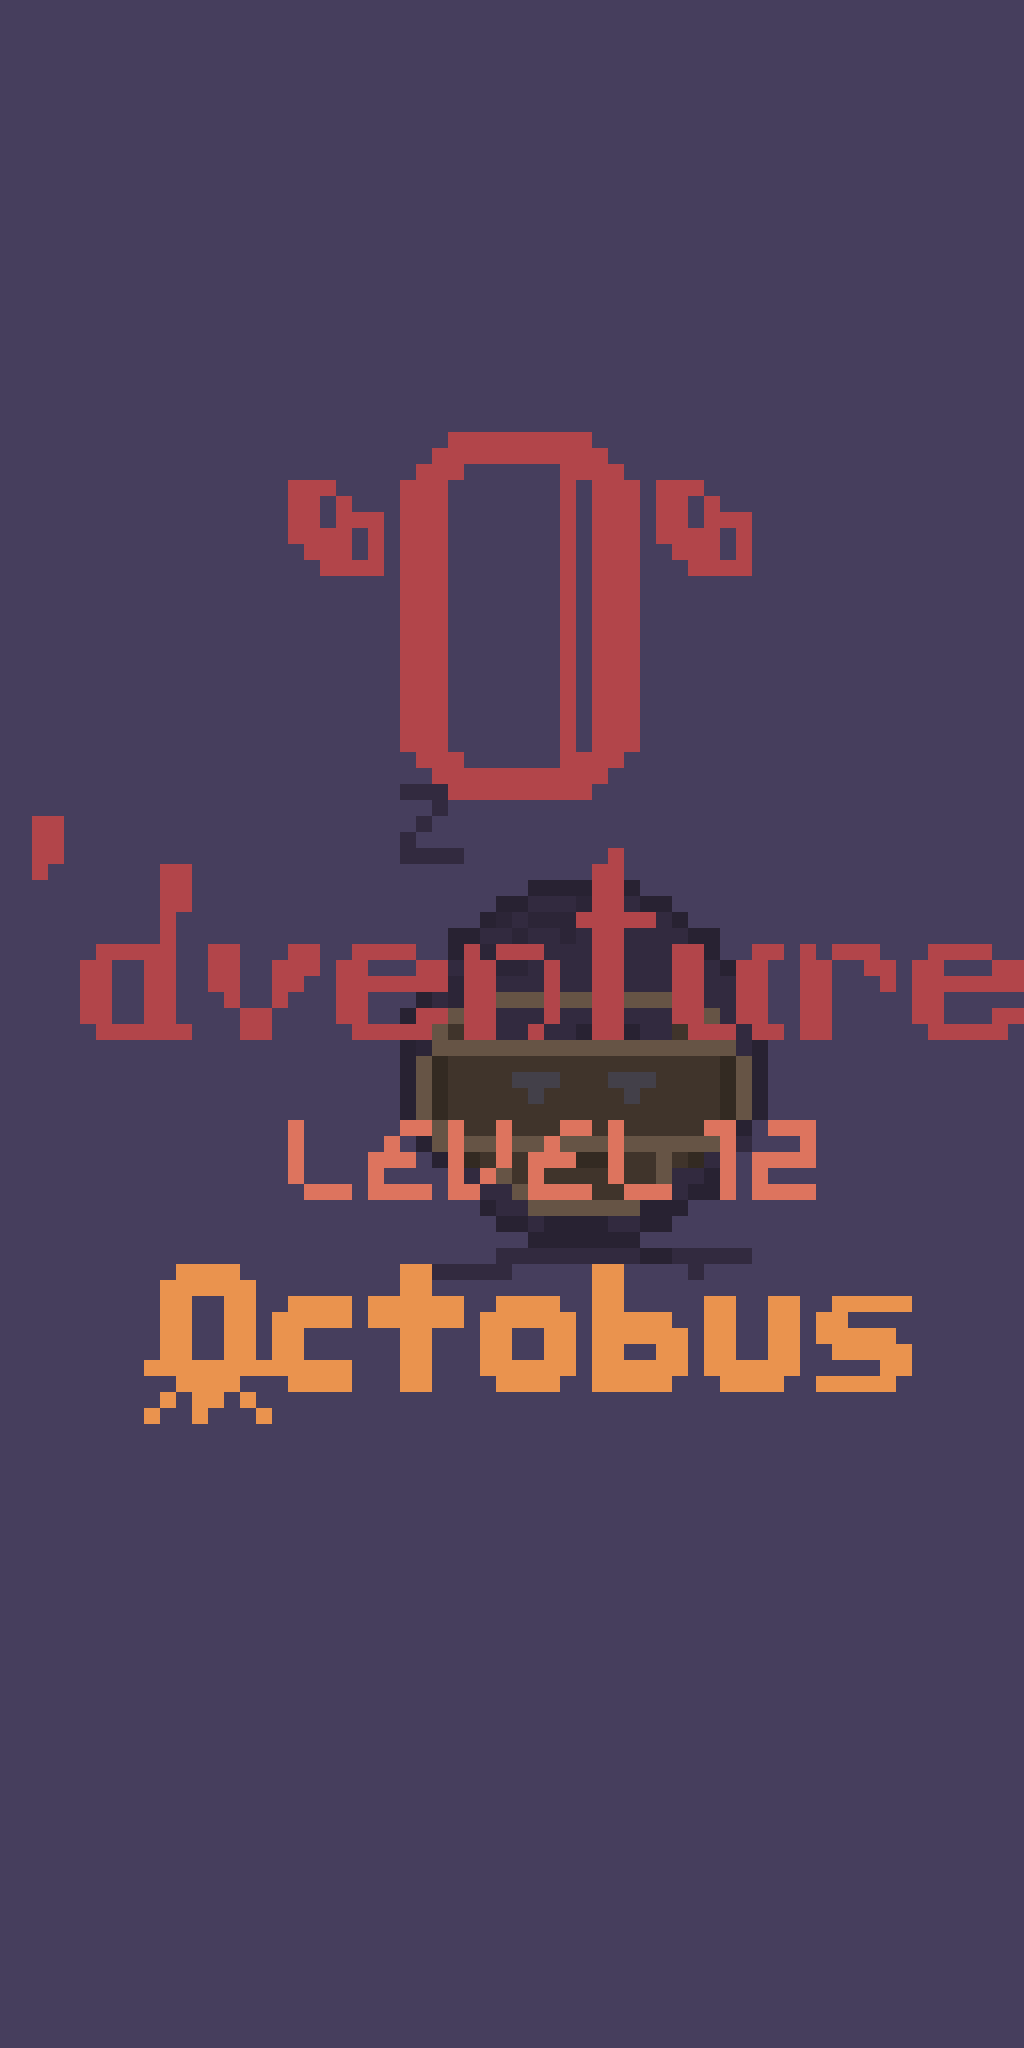 O’dventure, Level 12: Qctobus